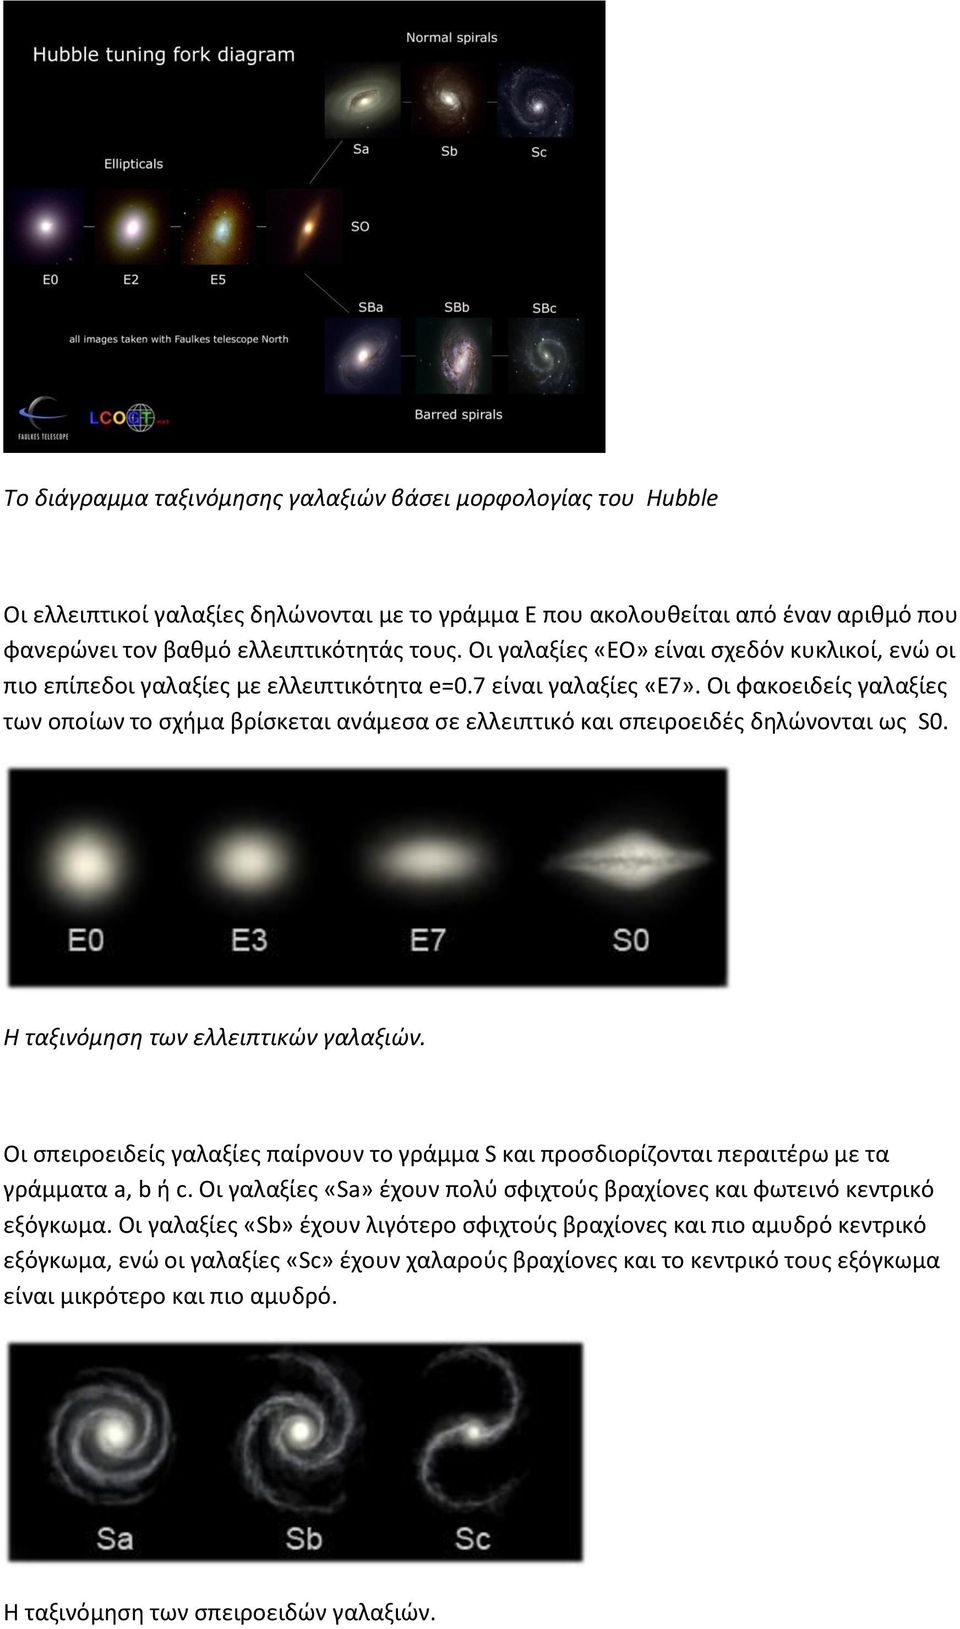 Οι φακοειδείς γαλαξίες των οποίων το σχήμα βρίσκεται ανάμεσα σε ελλειπτικό και σπειροειδές δηλώνονται ως S0. Η ταξινόμηση των ελλειπτικών γαλαξιών.